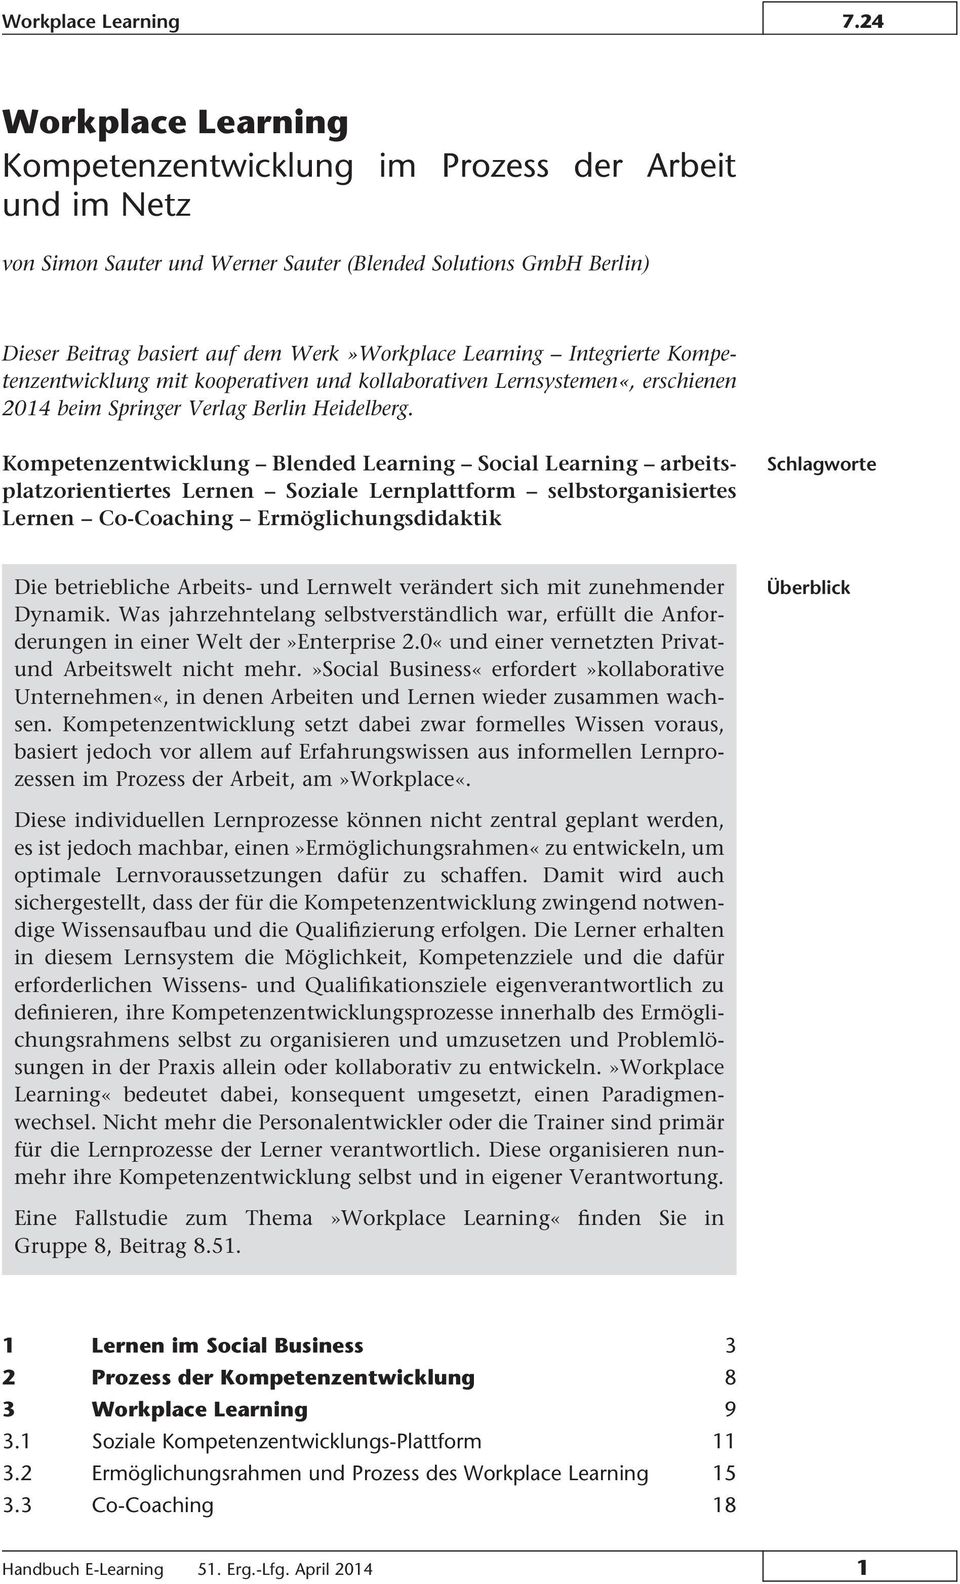 Integrierte Kompetenzentwicklung mit kooperativen und kollaborativen Lernsystemen«, erschienen 2014 beim Springer Verlag Berlin Heidelberg.